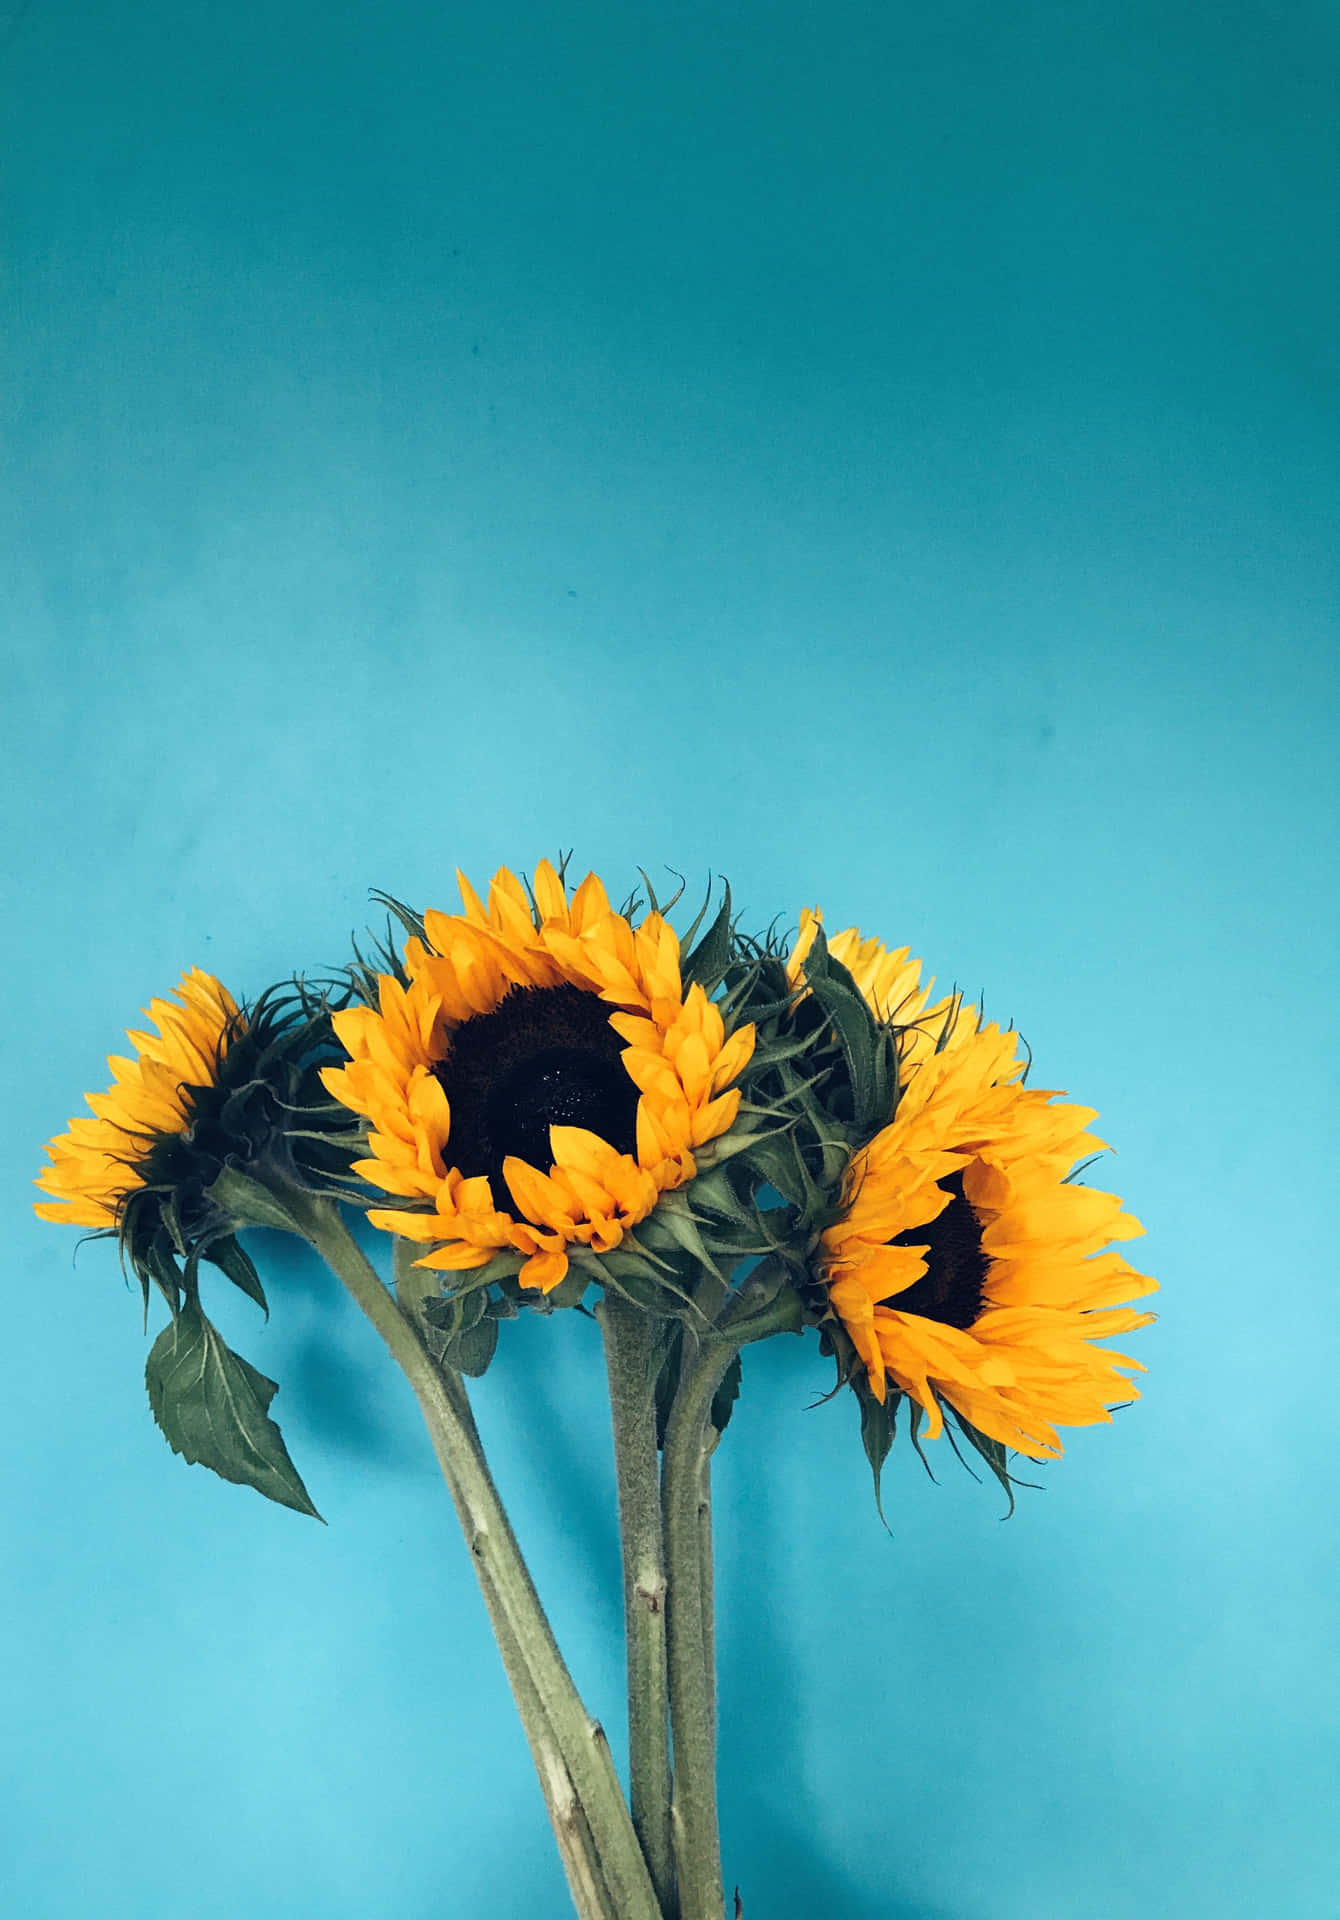 Eineleuchtend Gelbe Sonnenblume Ruht Gelassen In Der Warmen Sommerbrise. Wallpaper